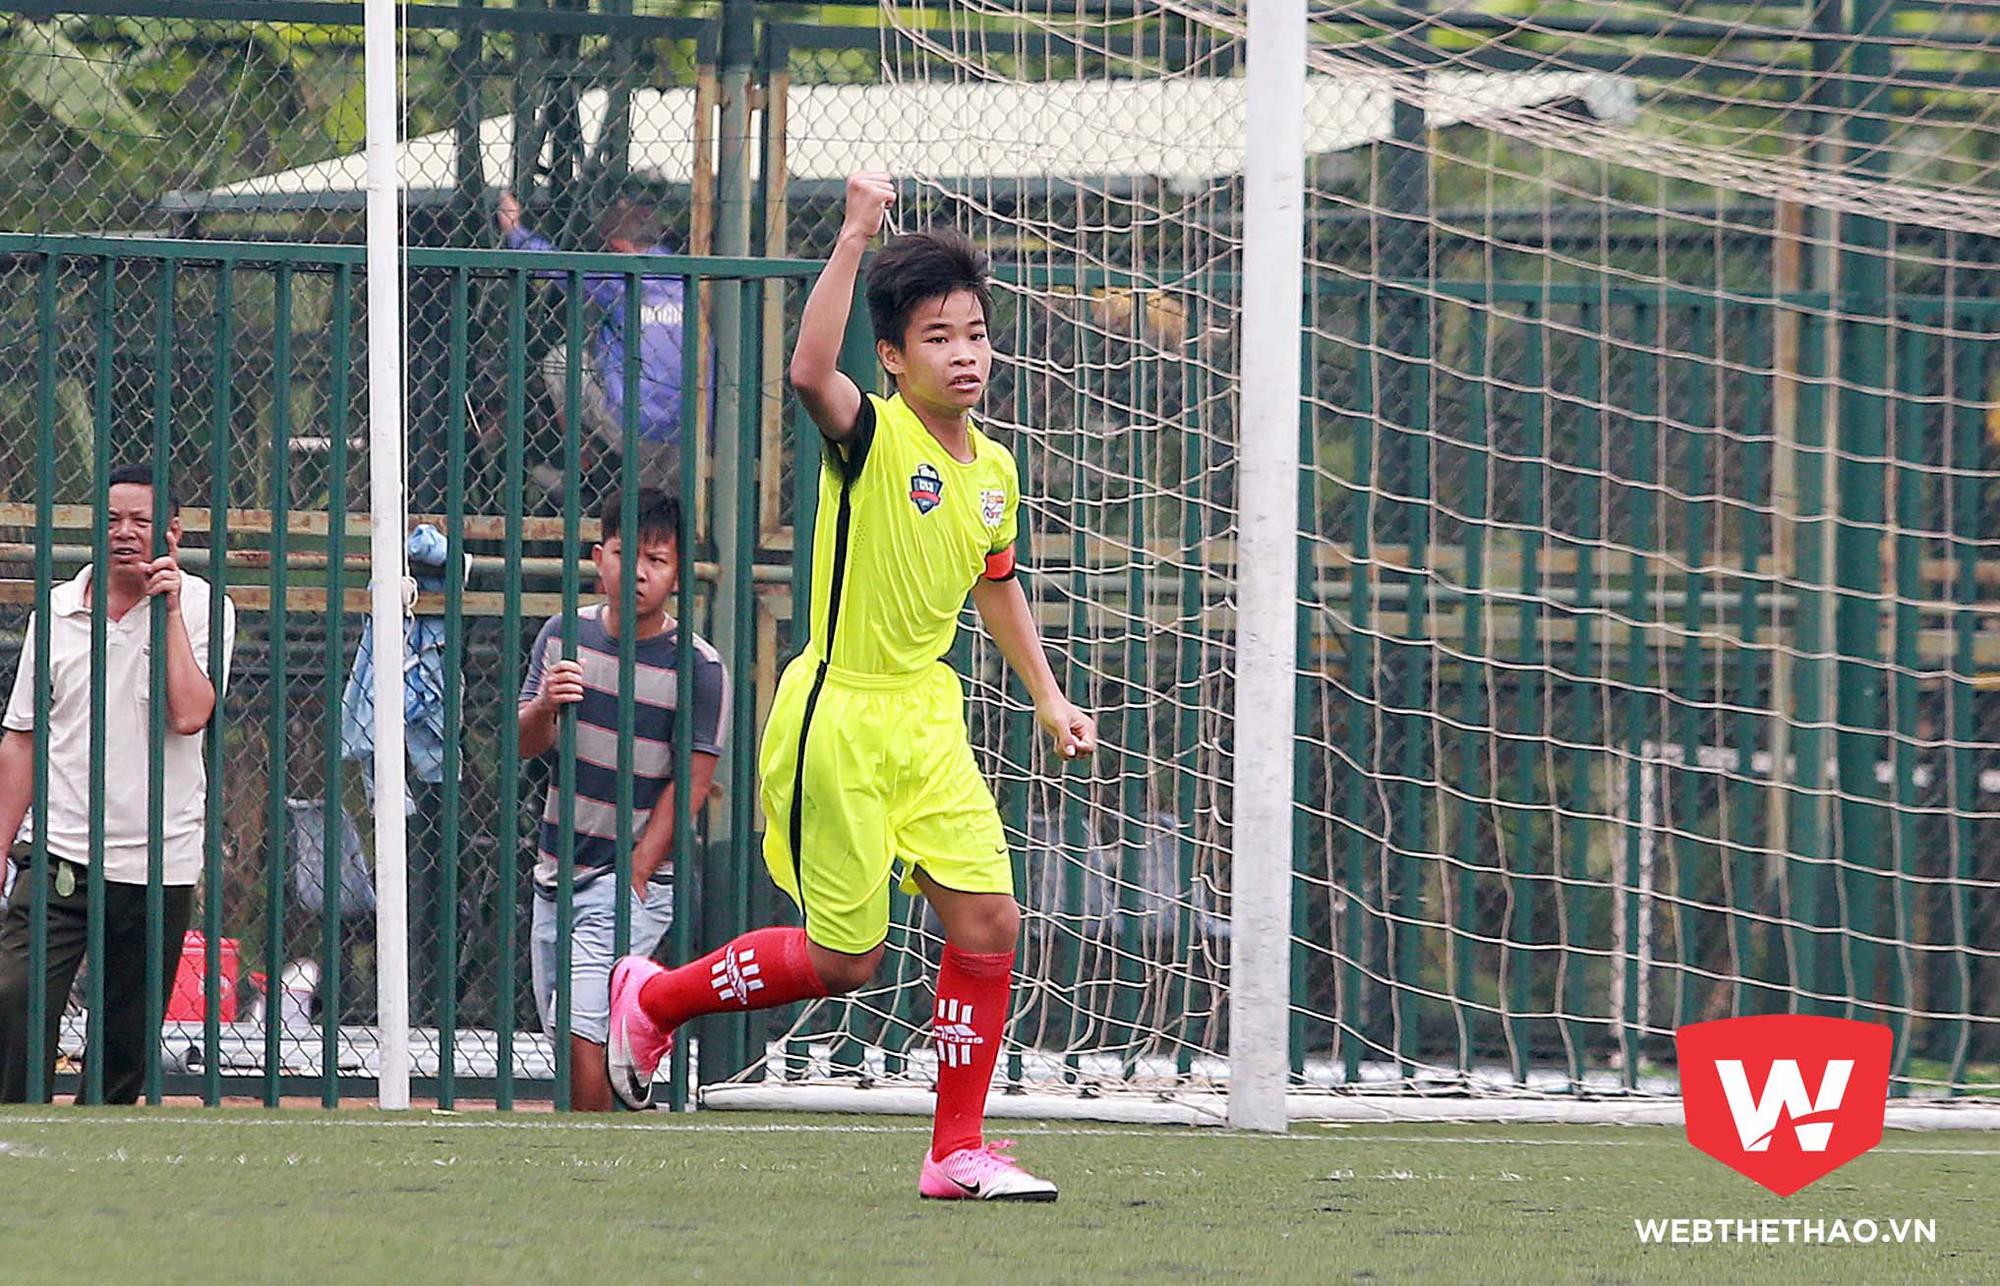 Đội trưởng của đội bóng đến từ TP Hồ Chí Minh đã thể hiện phẩm chất thủ lĩnh của mình với khả năng điều phối bóng, giữ nhịp trận đấu cùng khả năng săn bàn rất đáng nể.